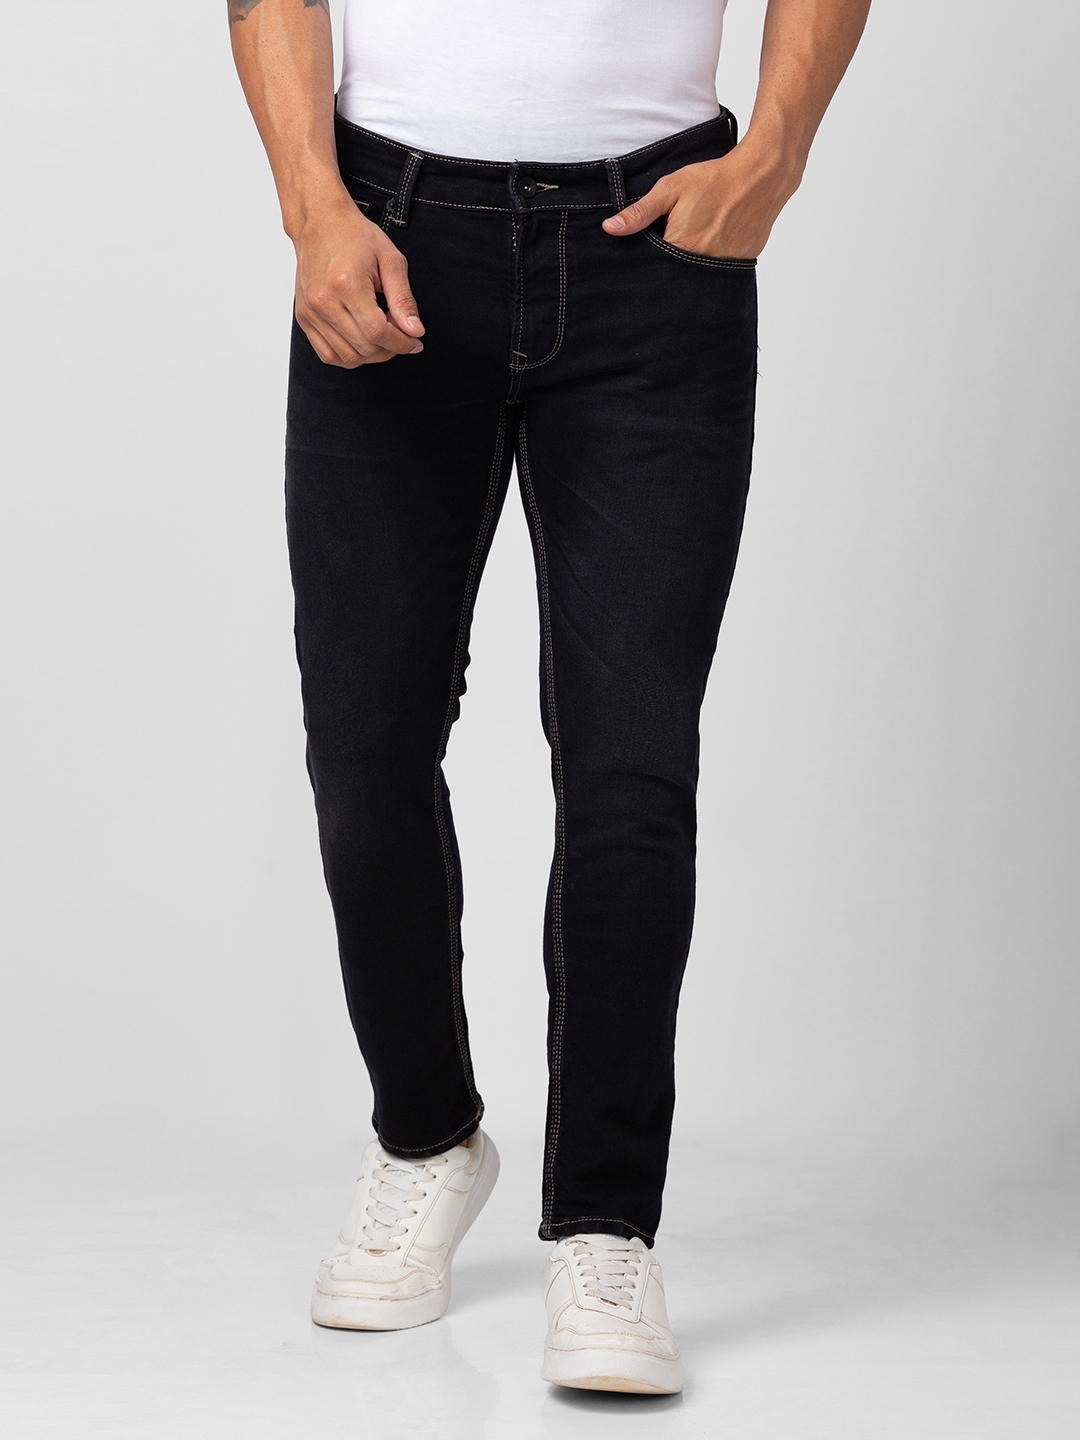 Men's Black Cotton Solid Jeans